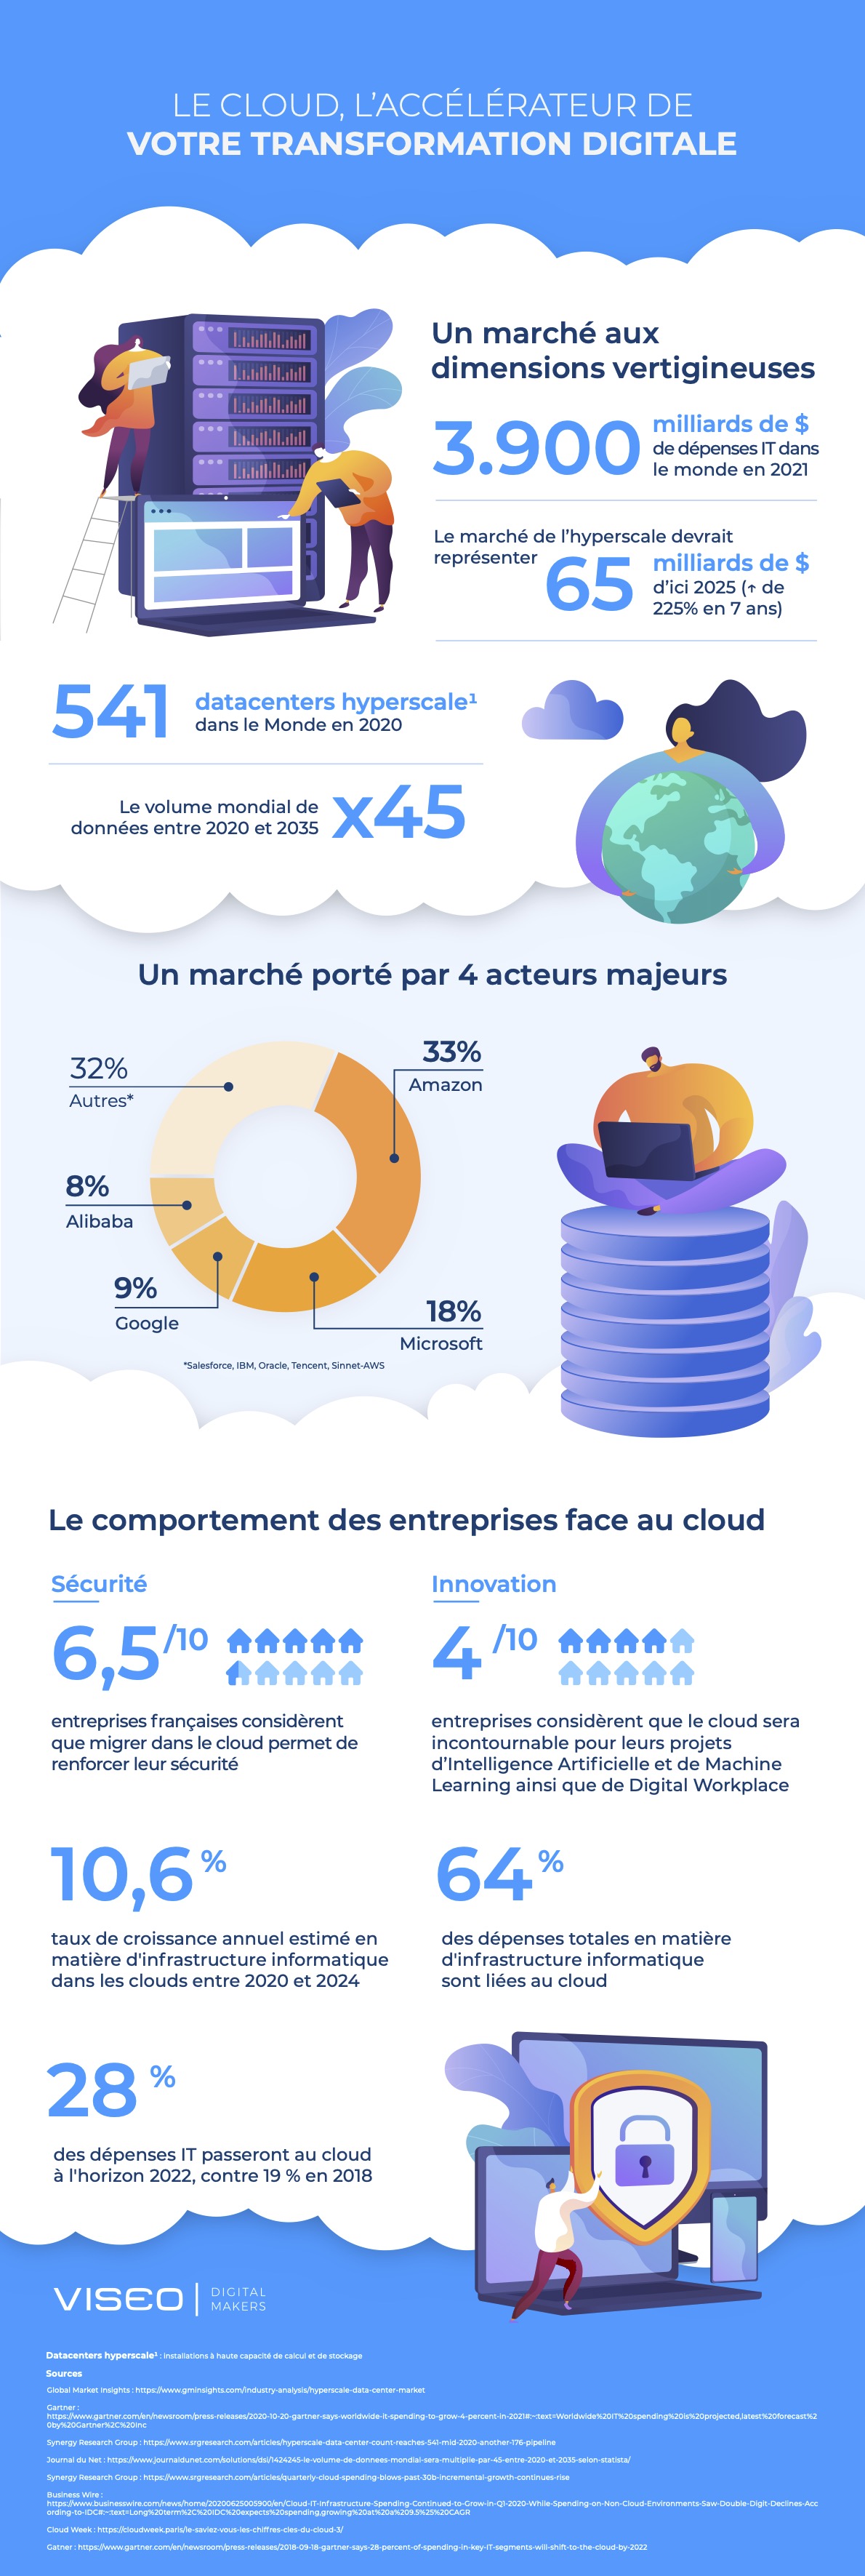 Infographie Cloud par VISEO